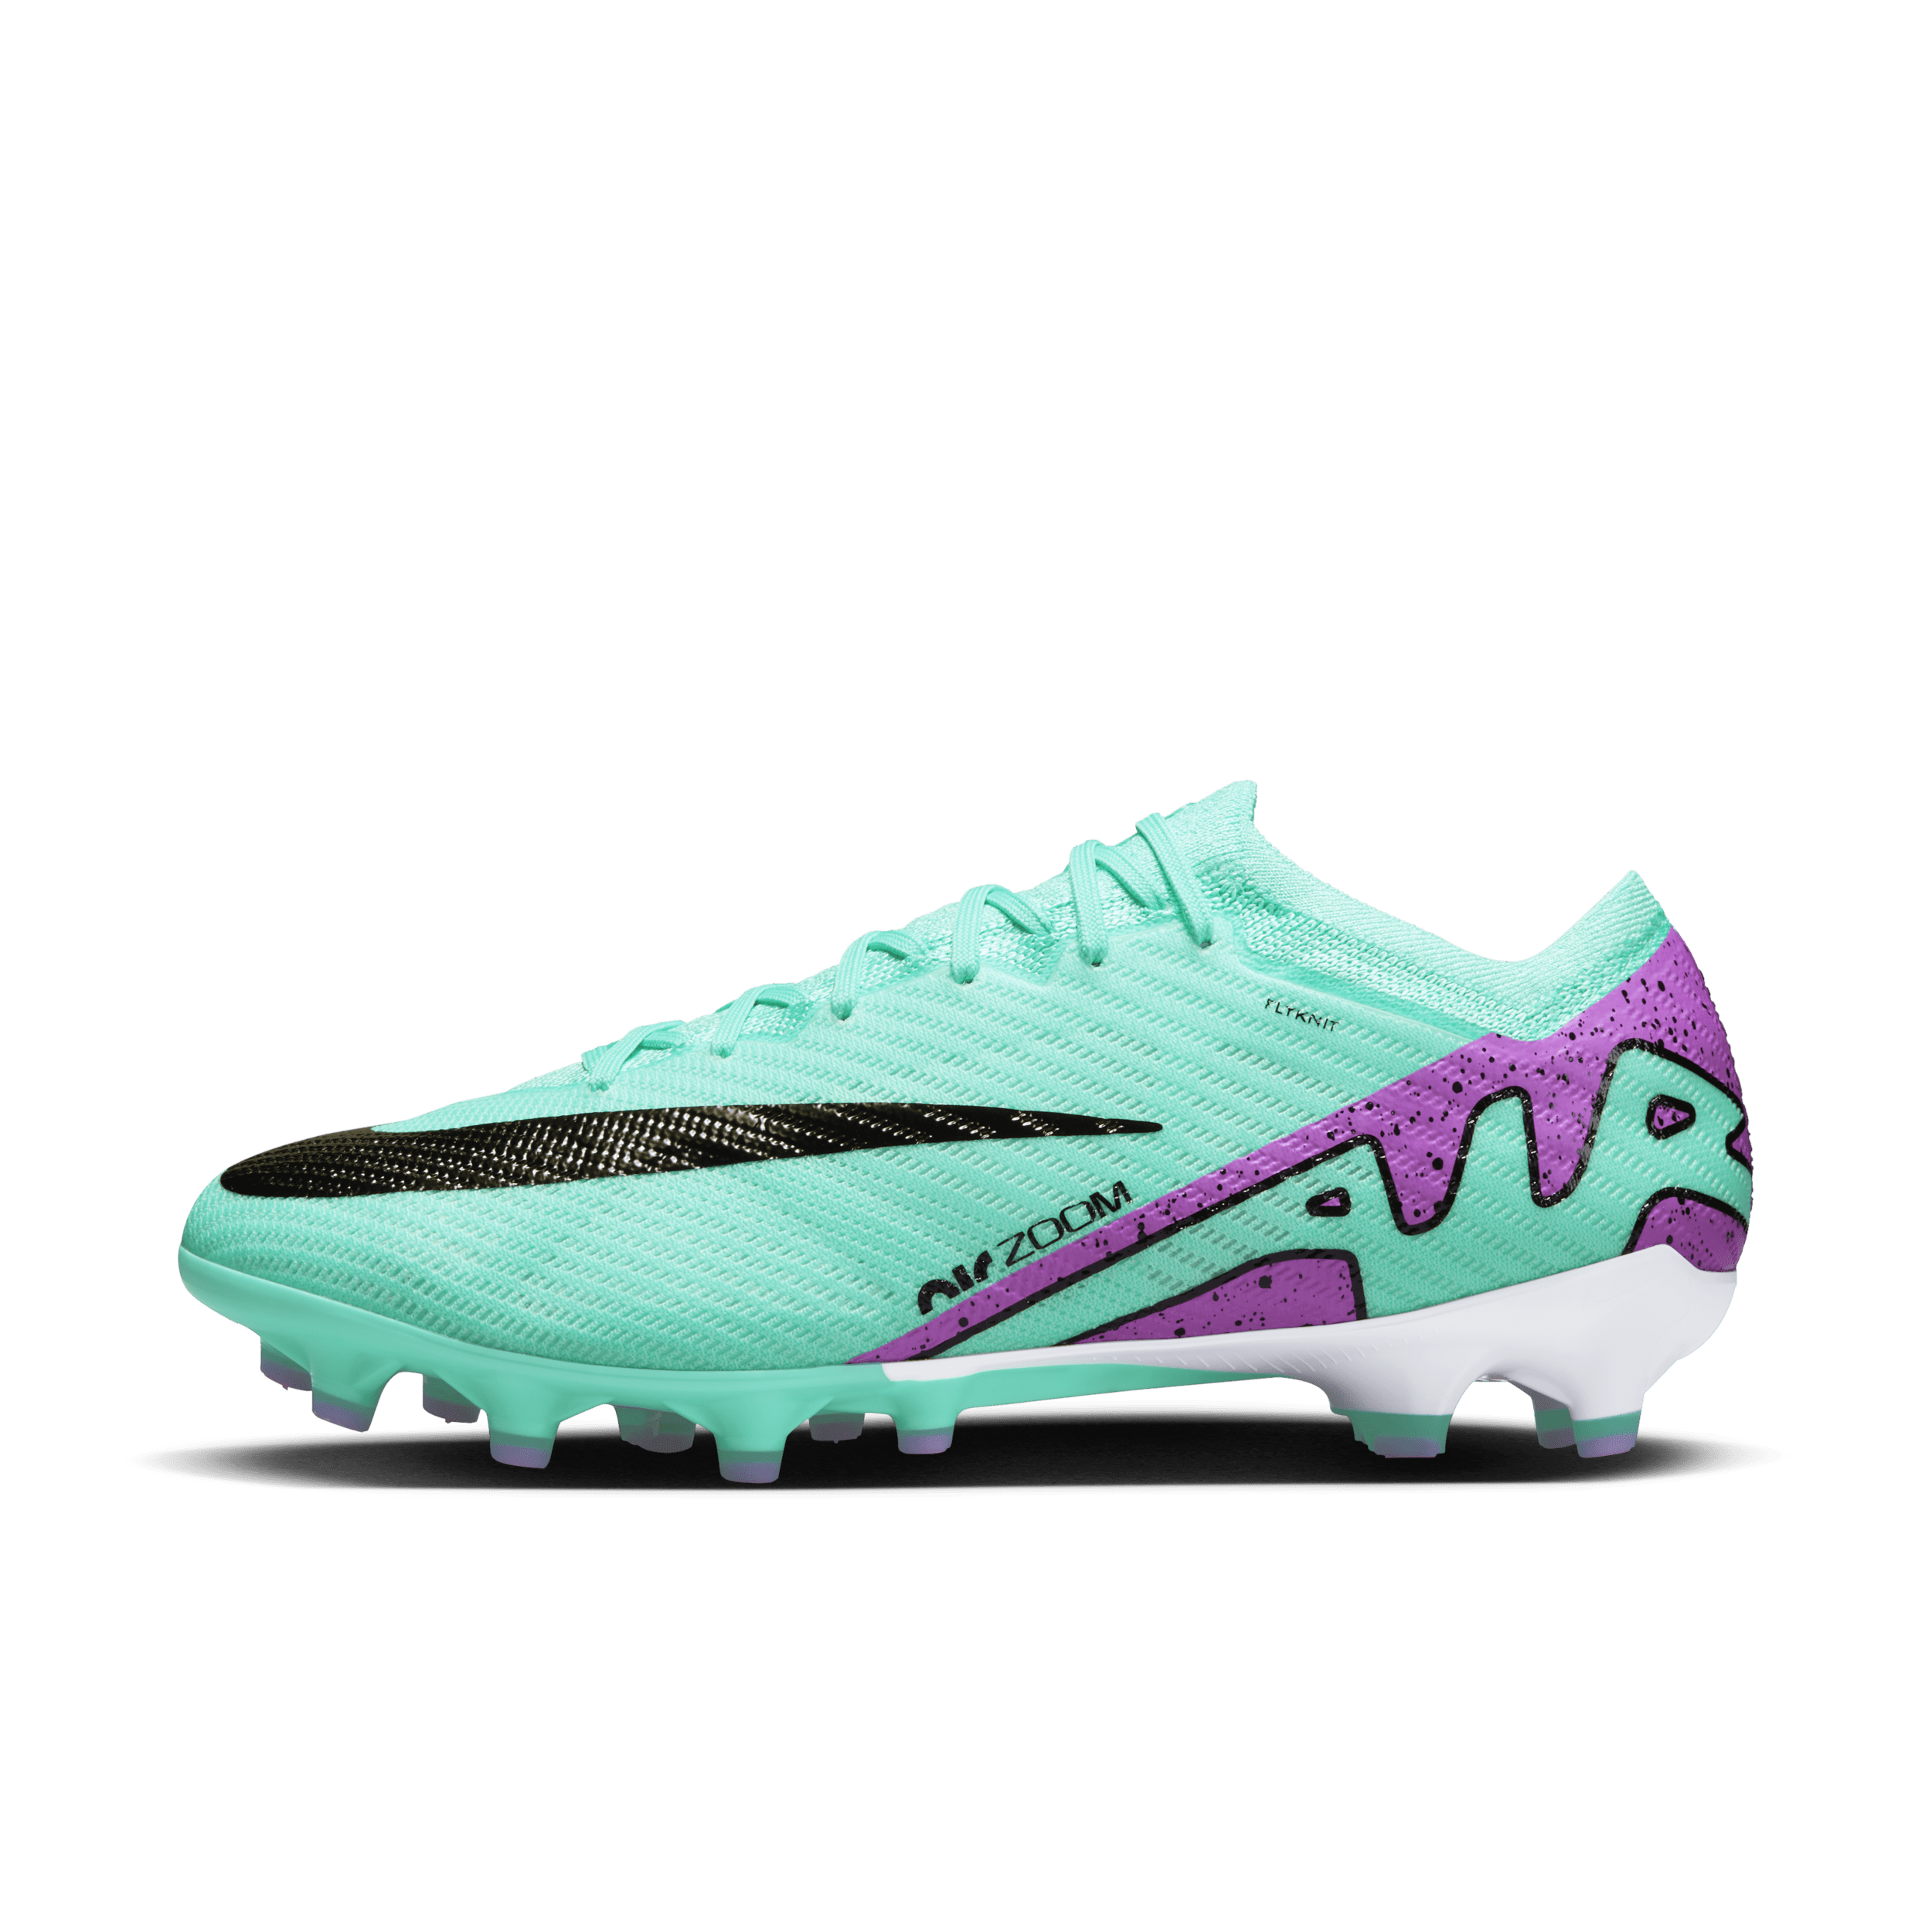 Nike Mercurial Vapor 15 Elite Low Top-fodboldstøvler til kunstgræs - grøn